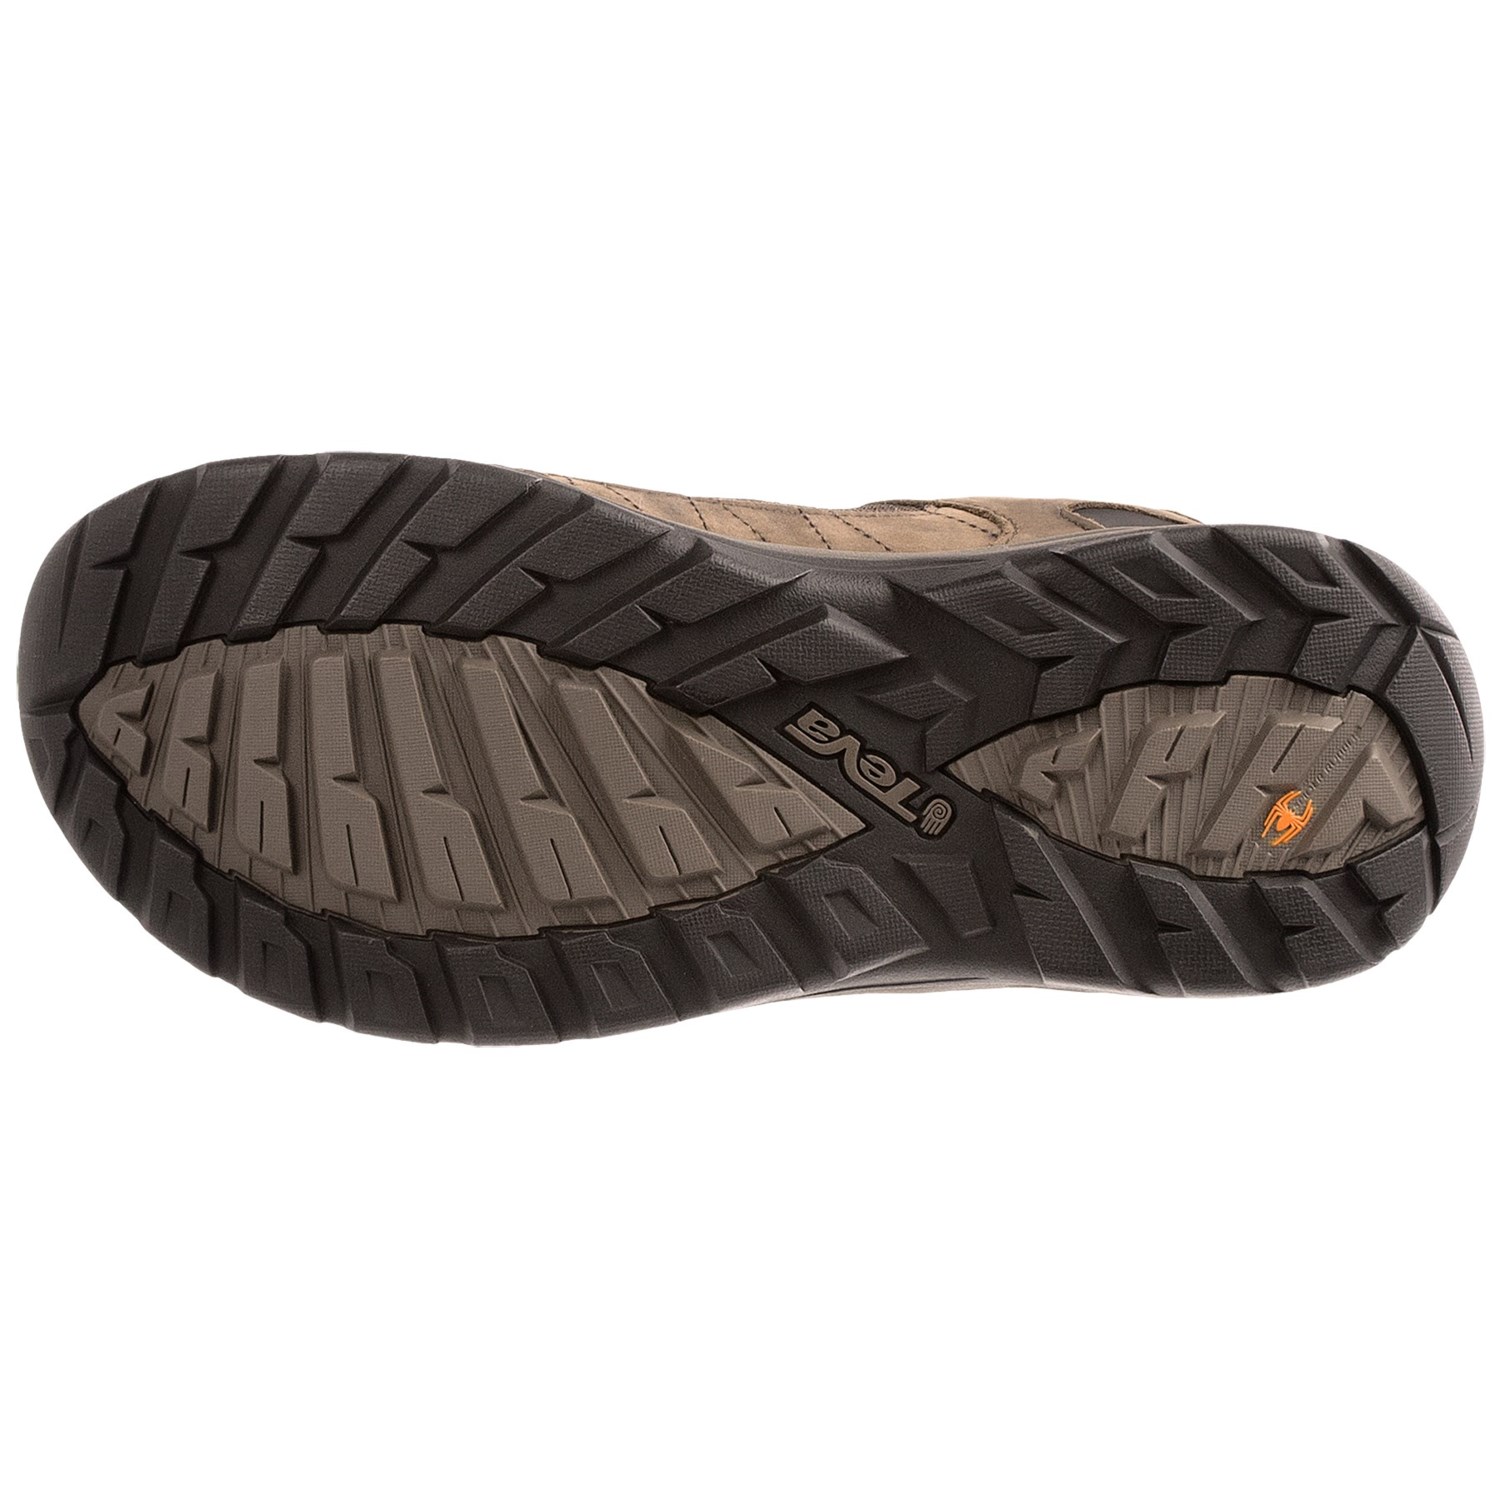 Teva Kimtah Mesh Trail Shoes (For Men) 8394V - Save 41%